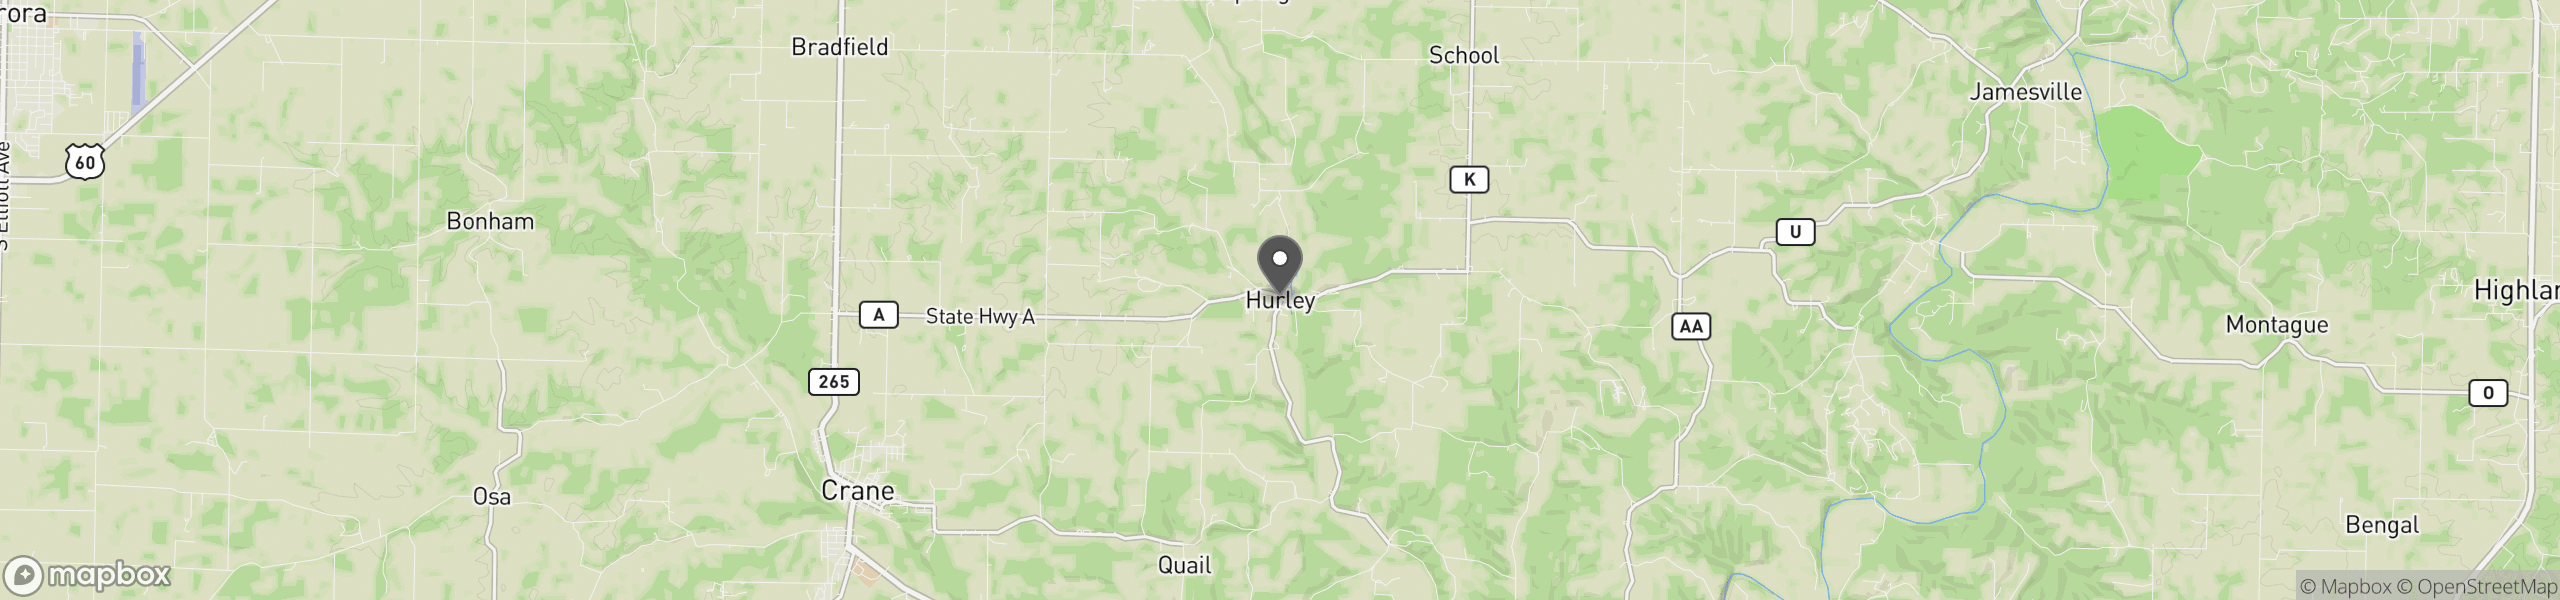 Hurley, MO